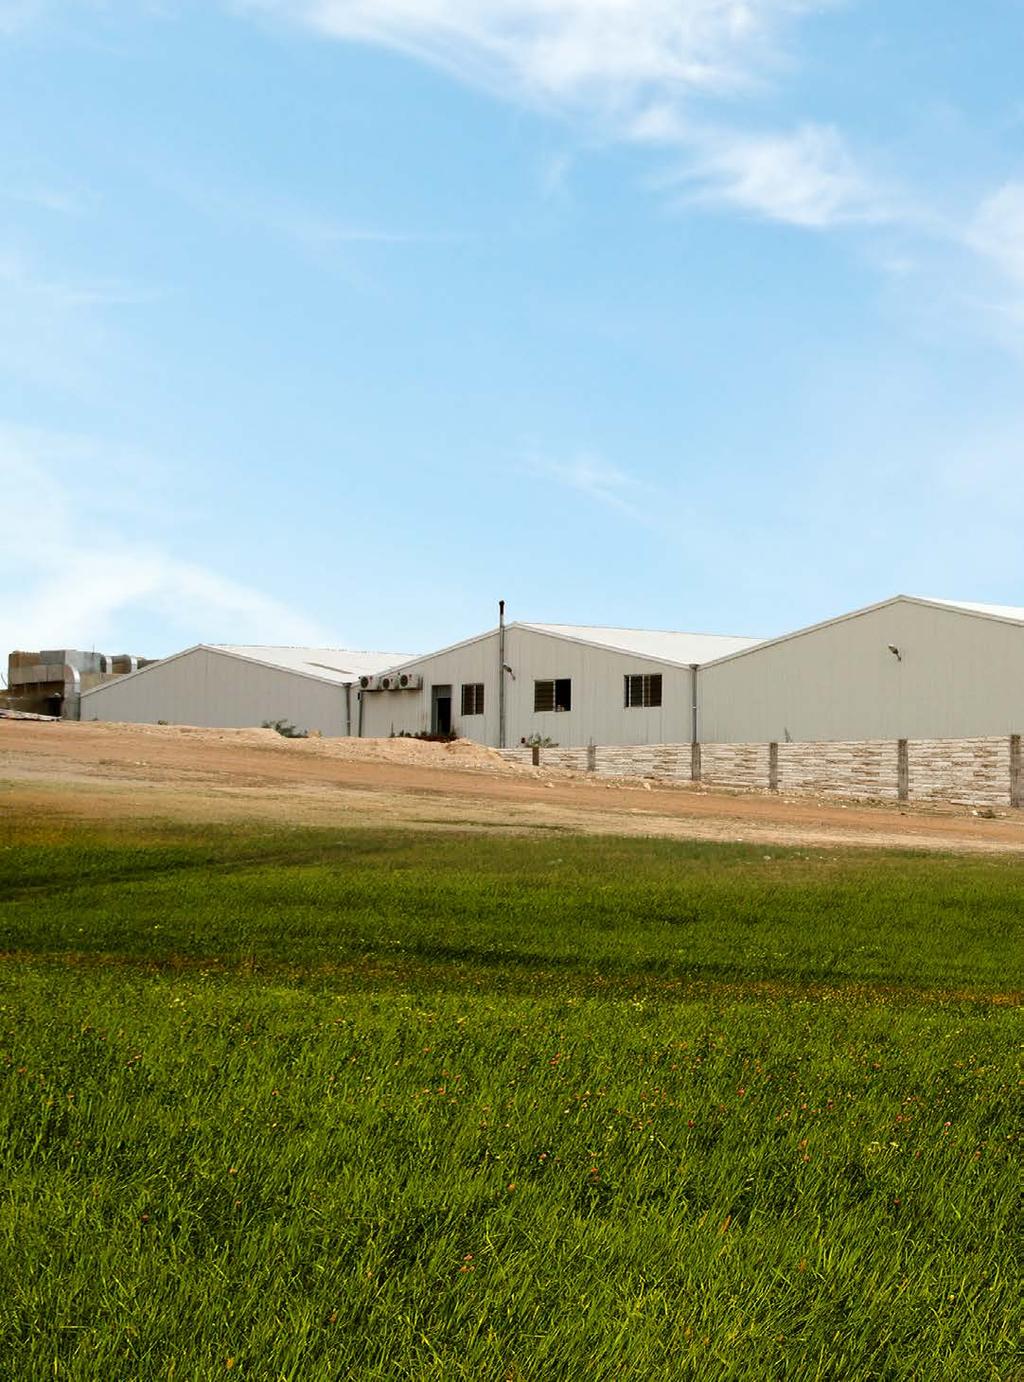 مصنع الشركة في العام 2005 قامت الشركة بتدشين مصنعها الحديث في منطقة سحاب بمساحة 5000 متر مربع و بمساحة إجمالية 10000 متر مربع.